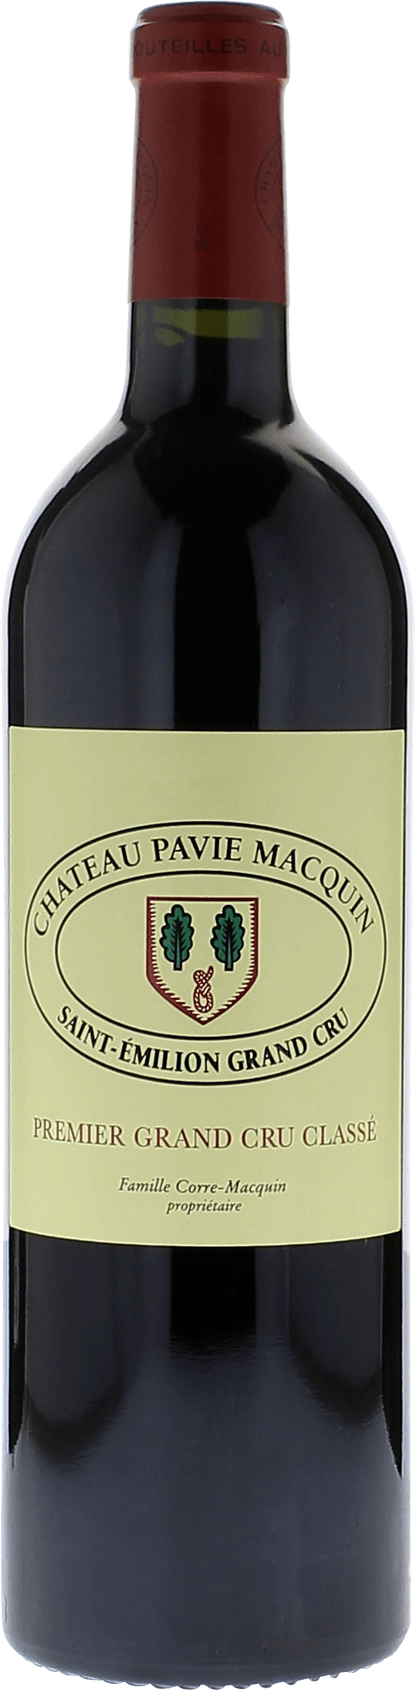 Pavie macquin 2015 1er Grand cru B class Saint-Emilion, Bordeaux rouge